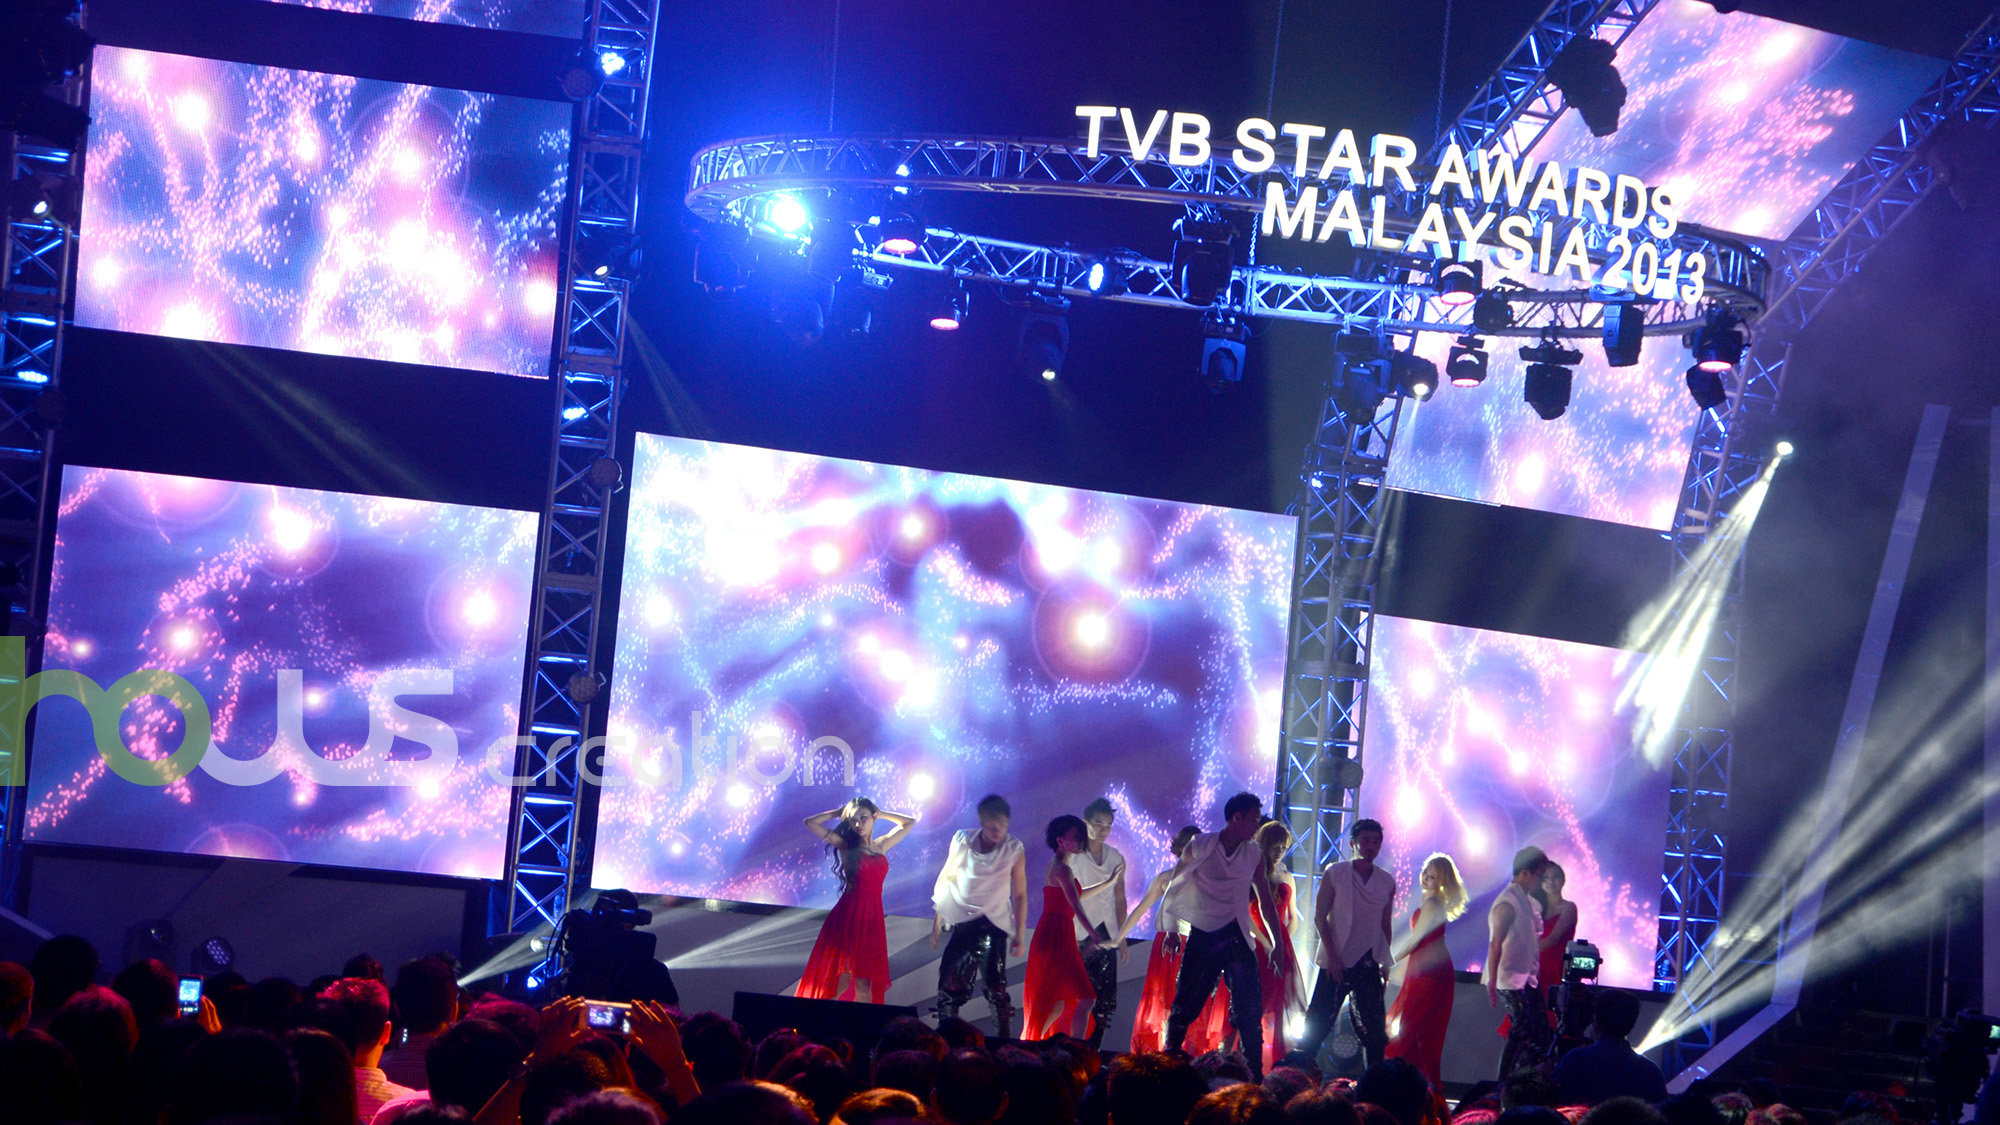 TVB STAR Awards @MALAYSIA – Hows Creation Ltd